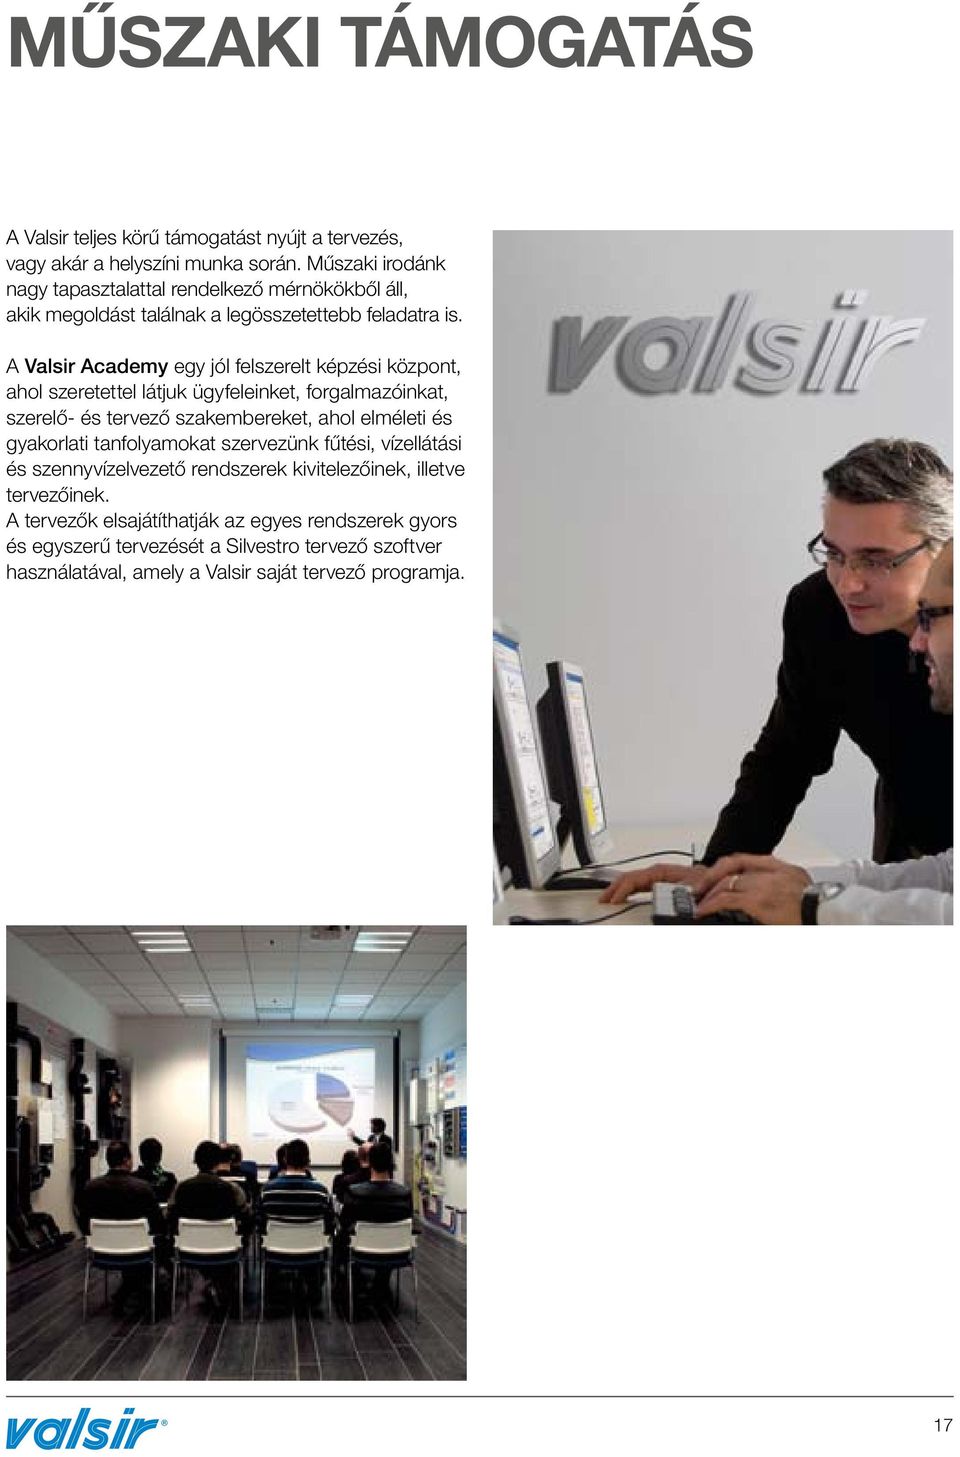 A Valsir Academy egy jól felszerelt képzési központ, ahol szeretettel látjuk ügyfeleinket, forgalmazóinkat, szerelő- és tervező szakembereket, ahol elméleti és